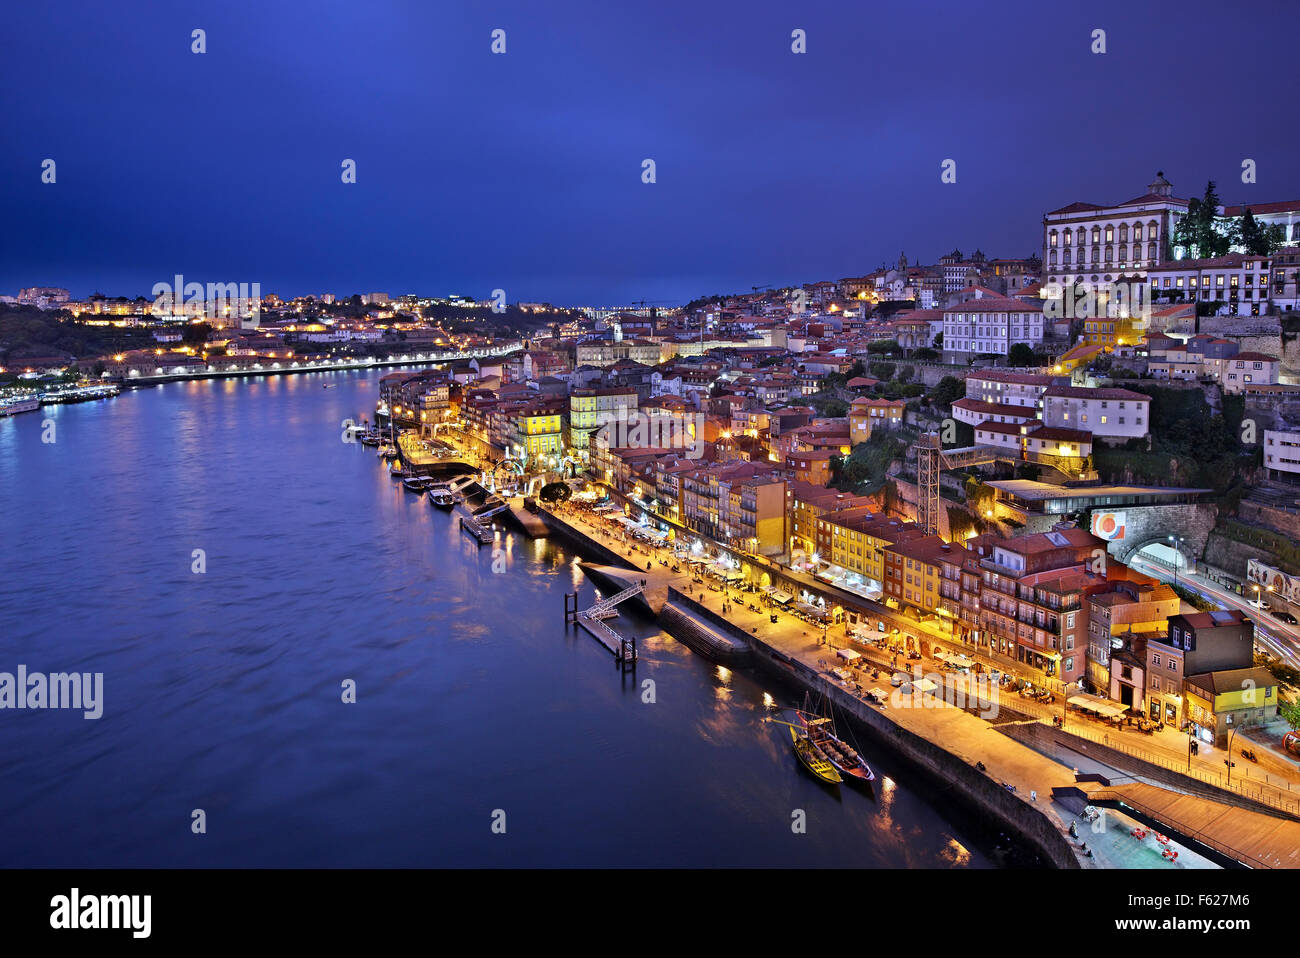 Vue de la nuit de Porto à partir de Pont Dom Luis I. Vous pouvez voir le quartier de Ribeira et la rivière Douro. Banque D'Images